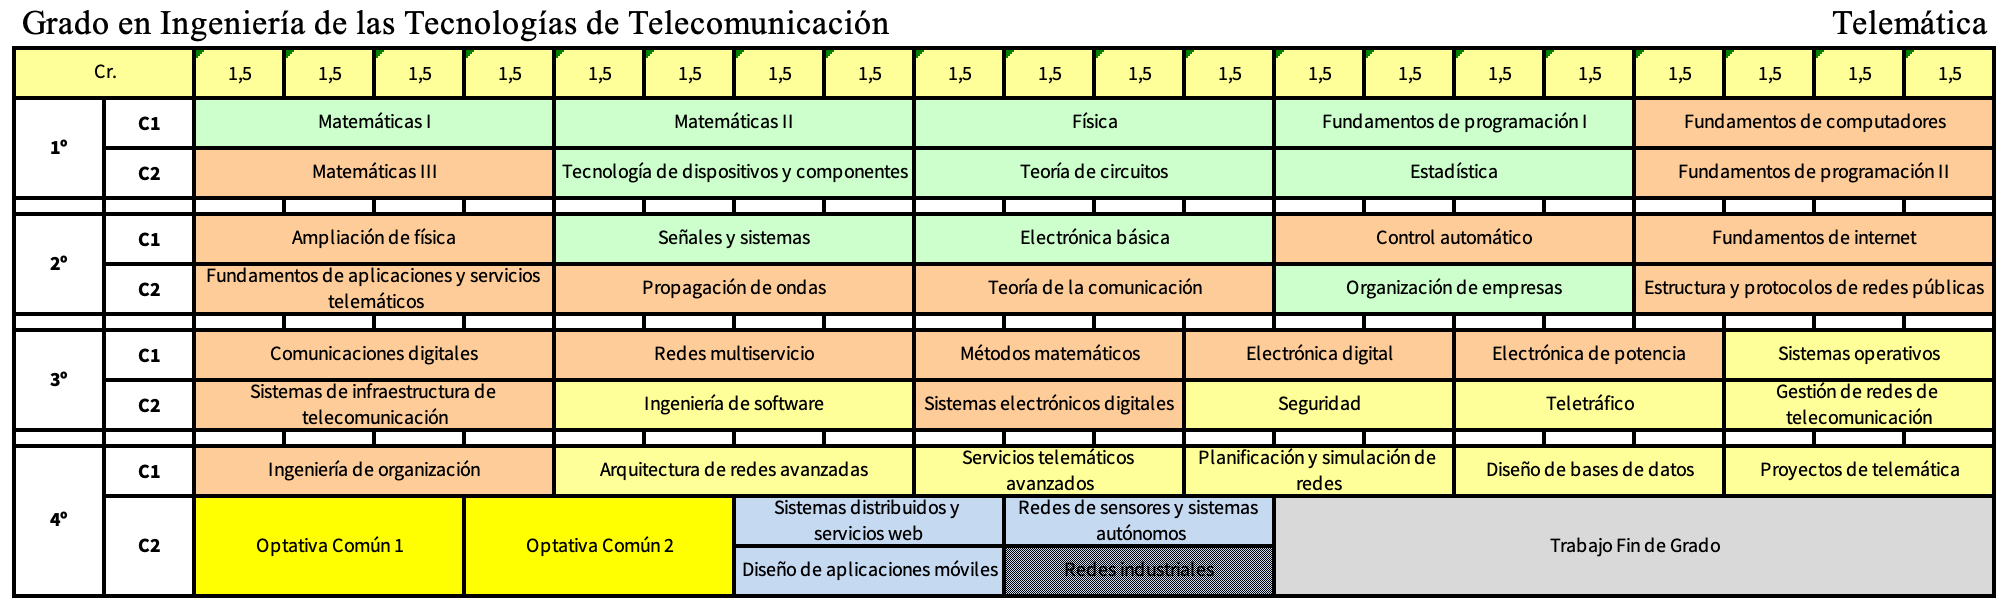 Grado en Ingeniería de las tecnologías de Telecomunicación - Mención en Telemática  | Etsi